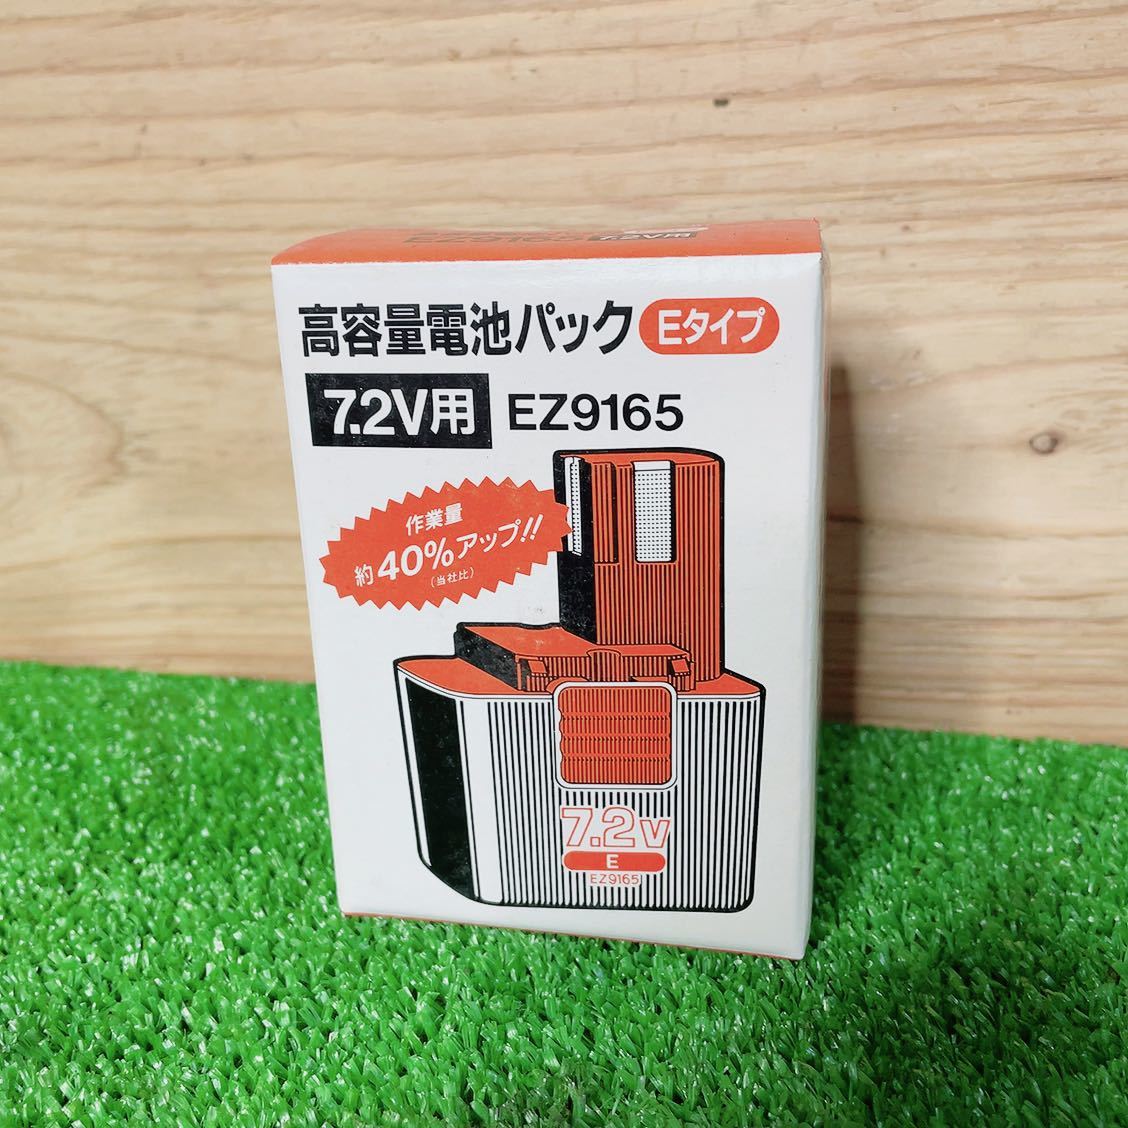 * не использовался *national National аккумулятор перезаряжаемая батарея EZ9165 7.2V No.1